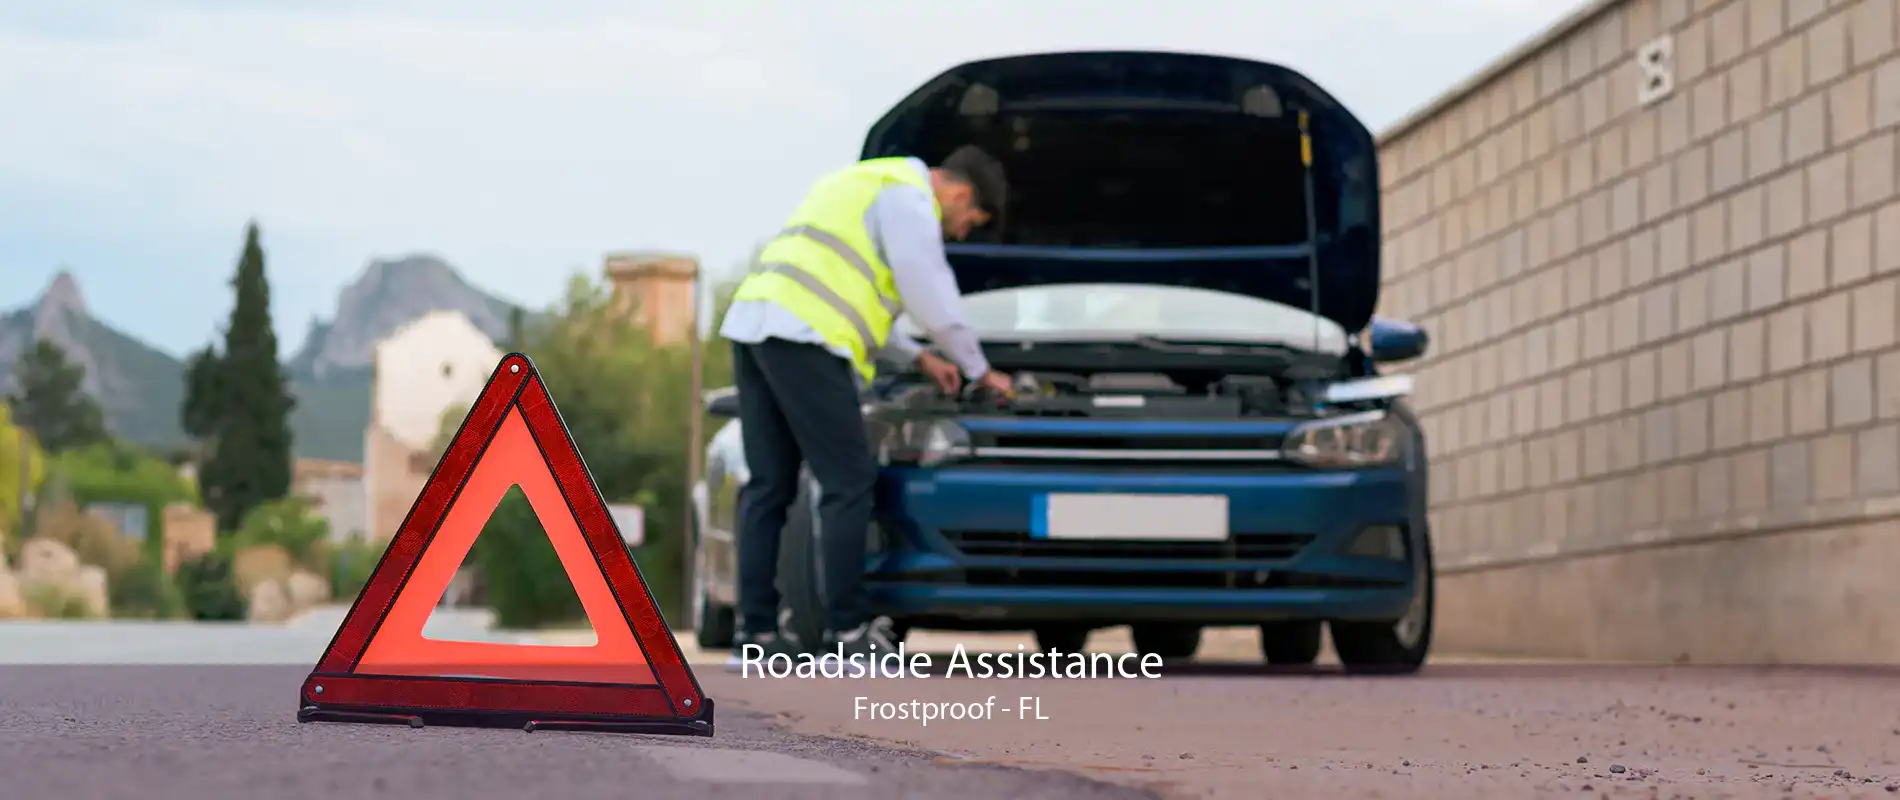 Roadside Assistance Frostproof - FL